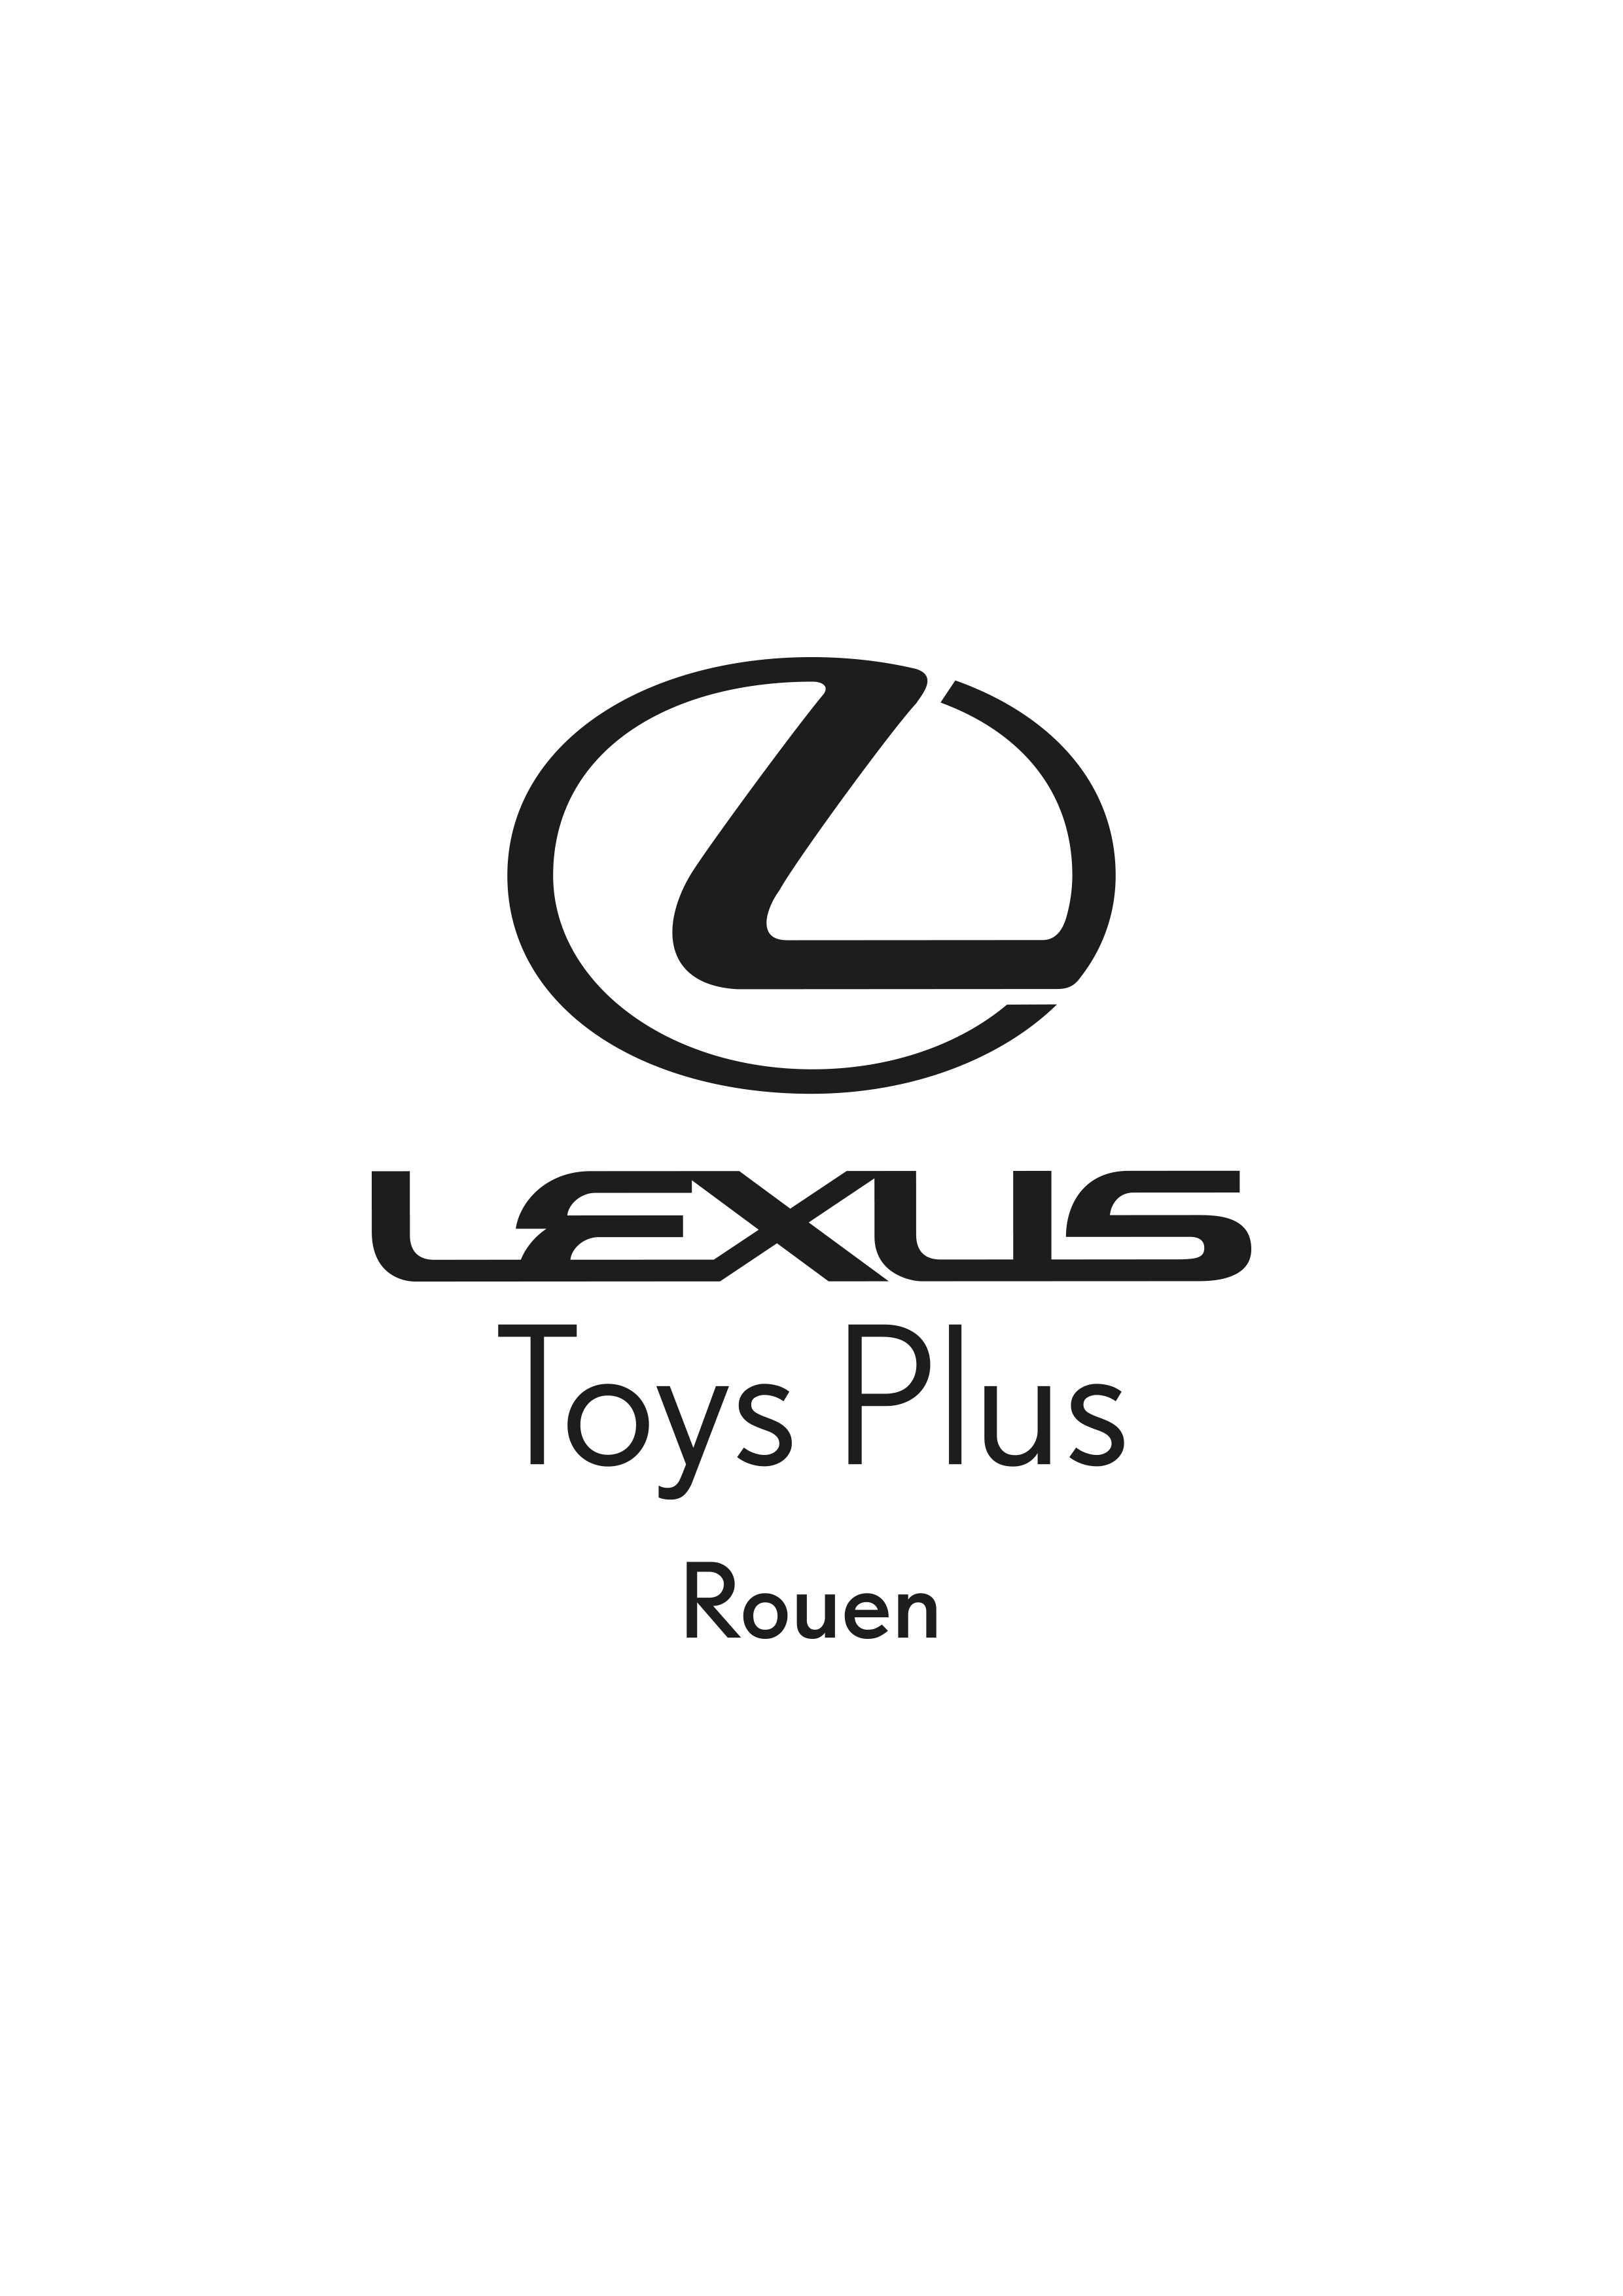 https://rouenmetrobasket.com/wp-content/uploads/2019/11/Lexus-toys-plus-LOGO.png